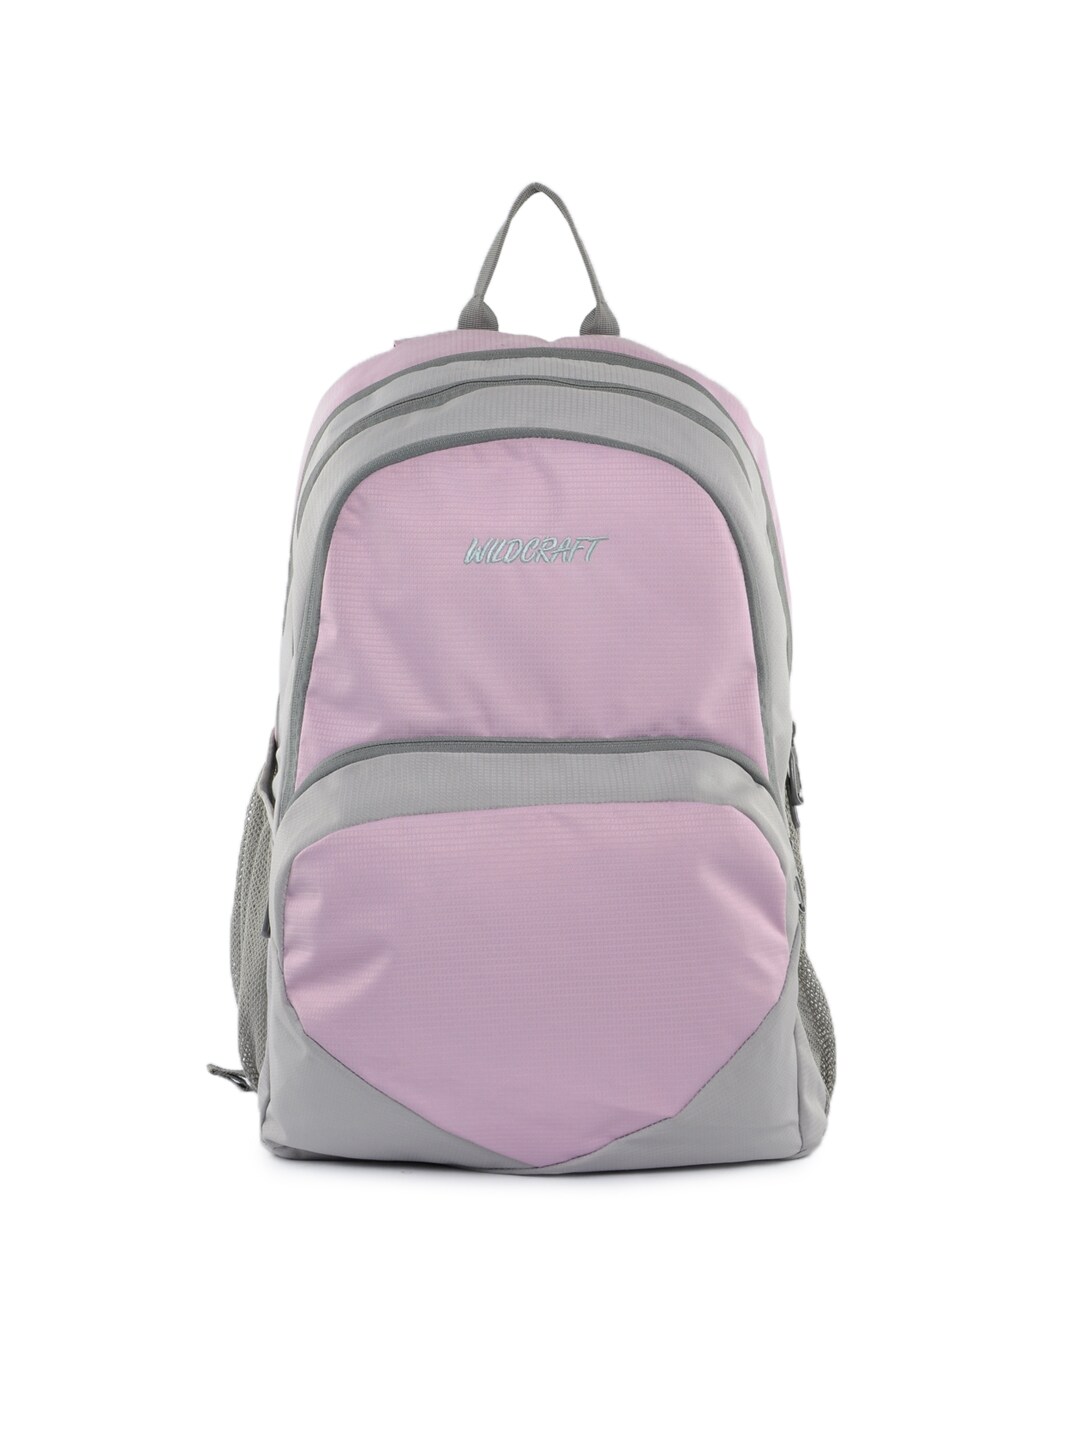 Wildcraft Unisex Pink & Grey Backpack